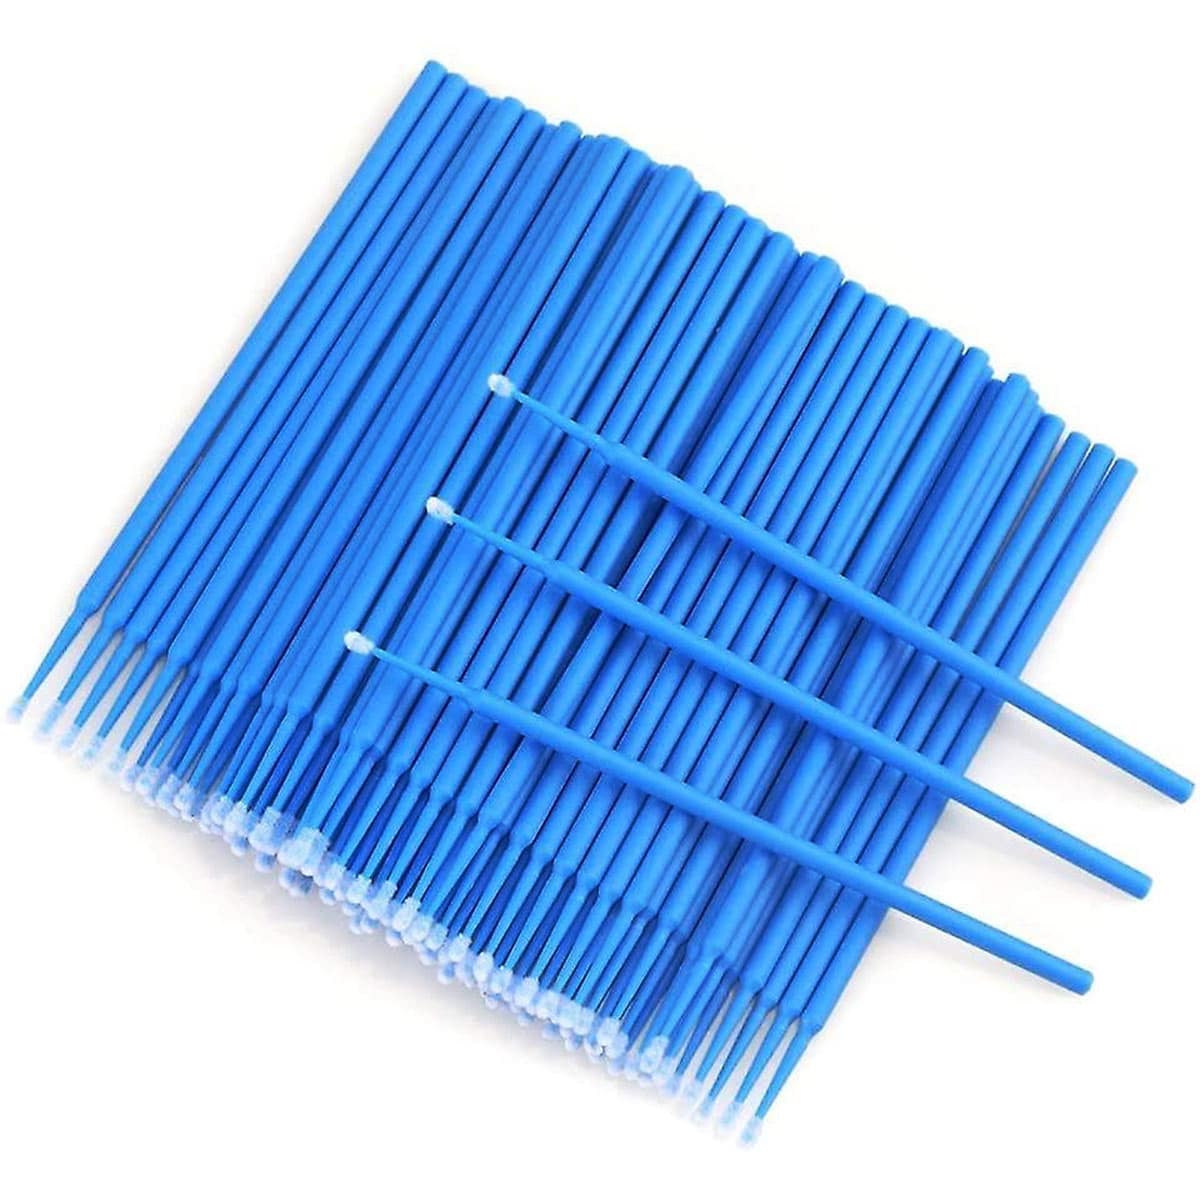 Microbrushes Brushes for eyelashes